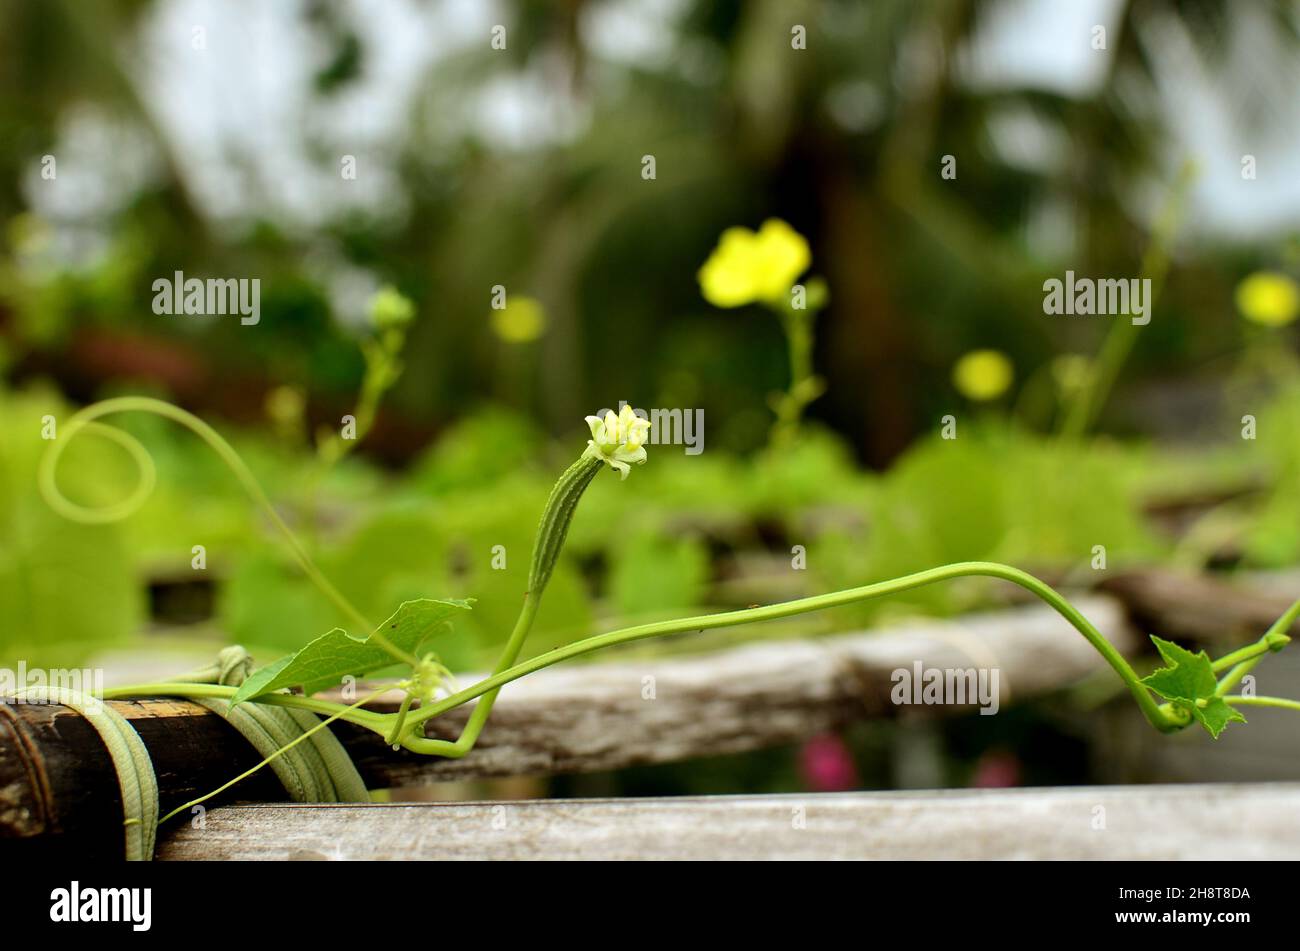 Grünes Süßwasser Spinat, Hygrophila auriculata, Ridge Gourd Blume Stockfoto